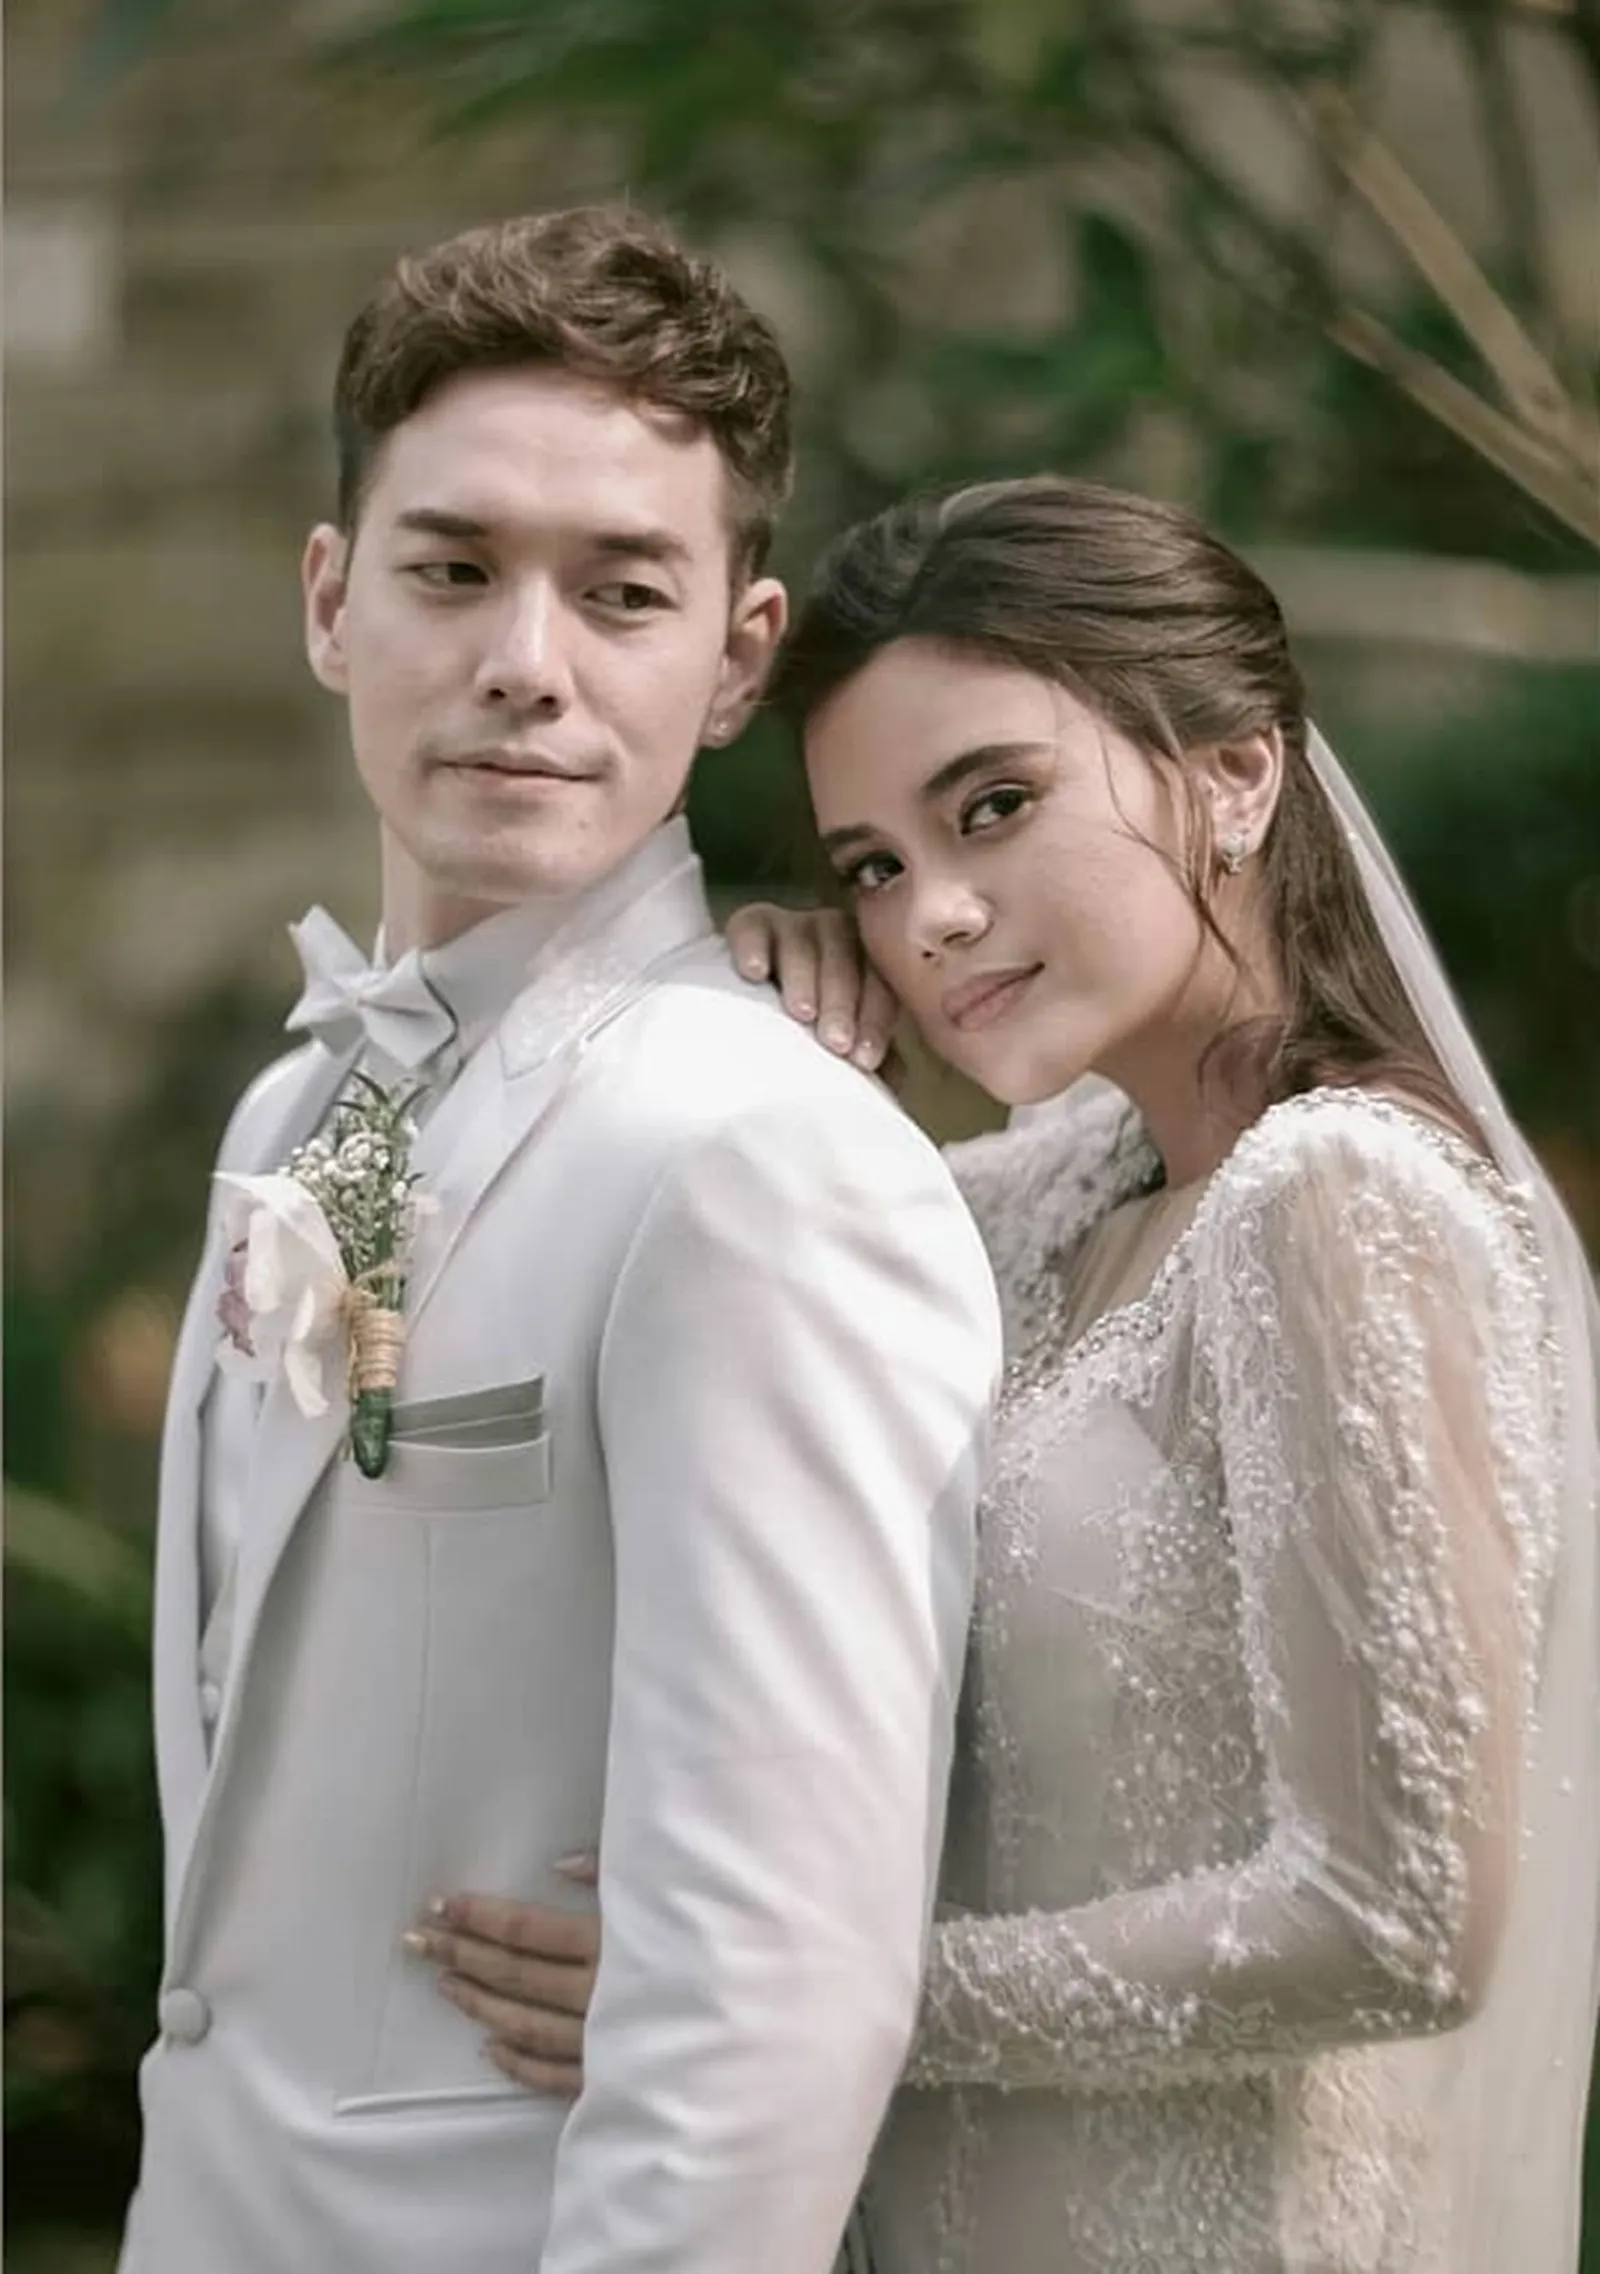 Disinggung Soal Agama, 9 Fakta Pernikahan Audi Marissa & Anthony Xie